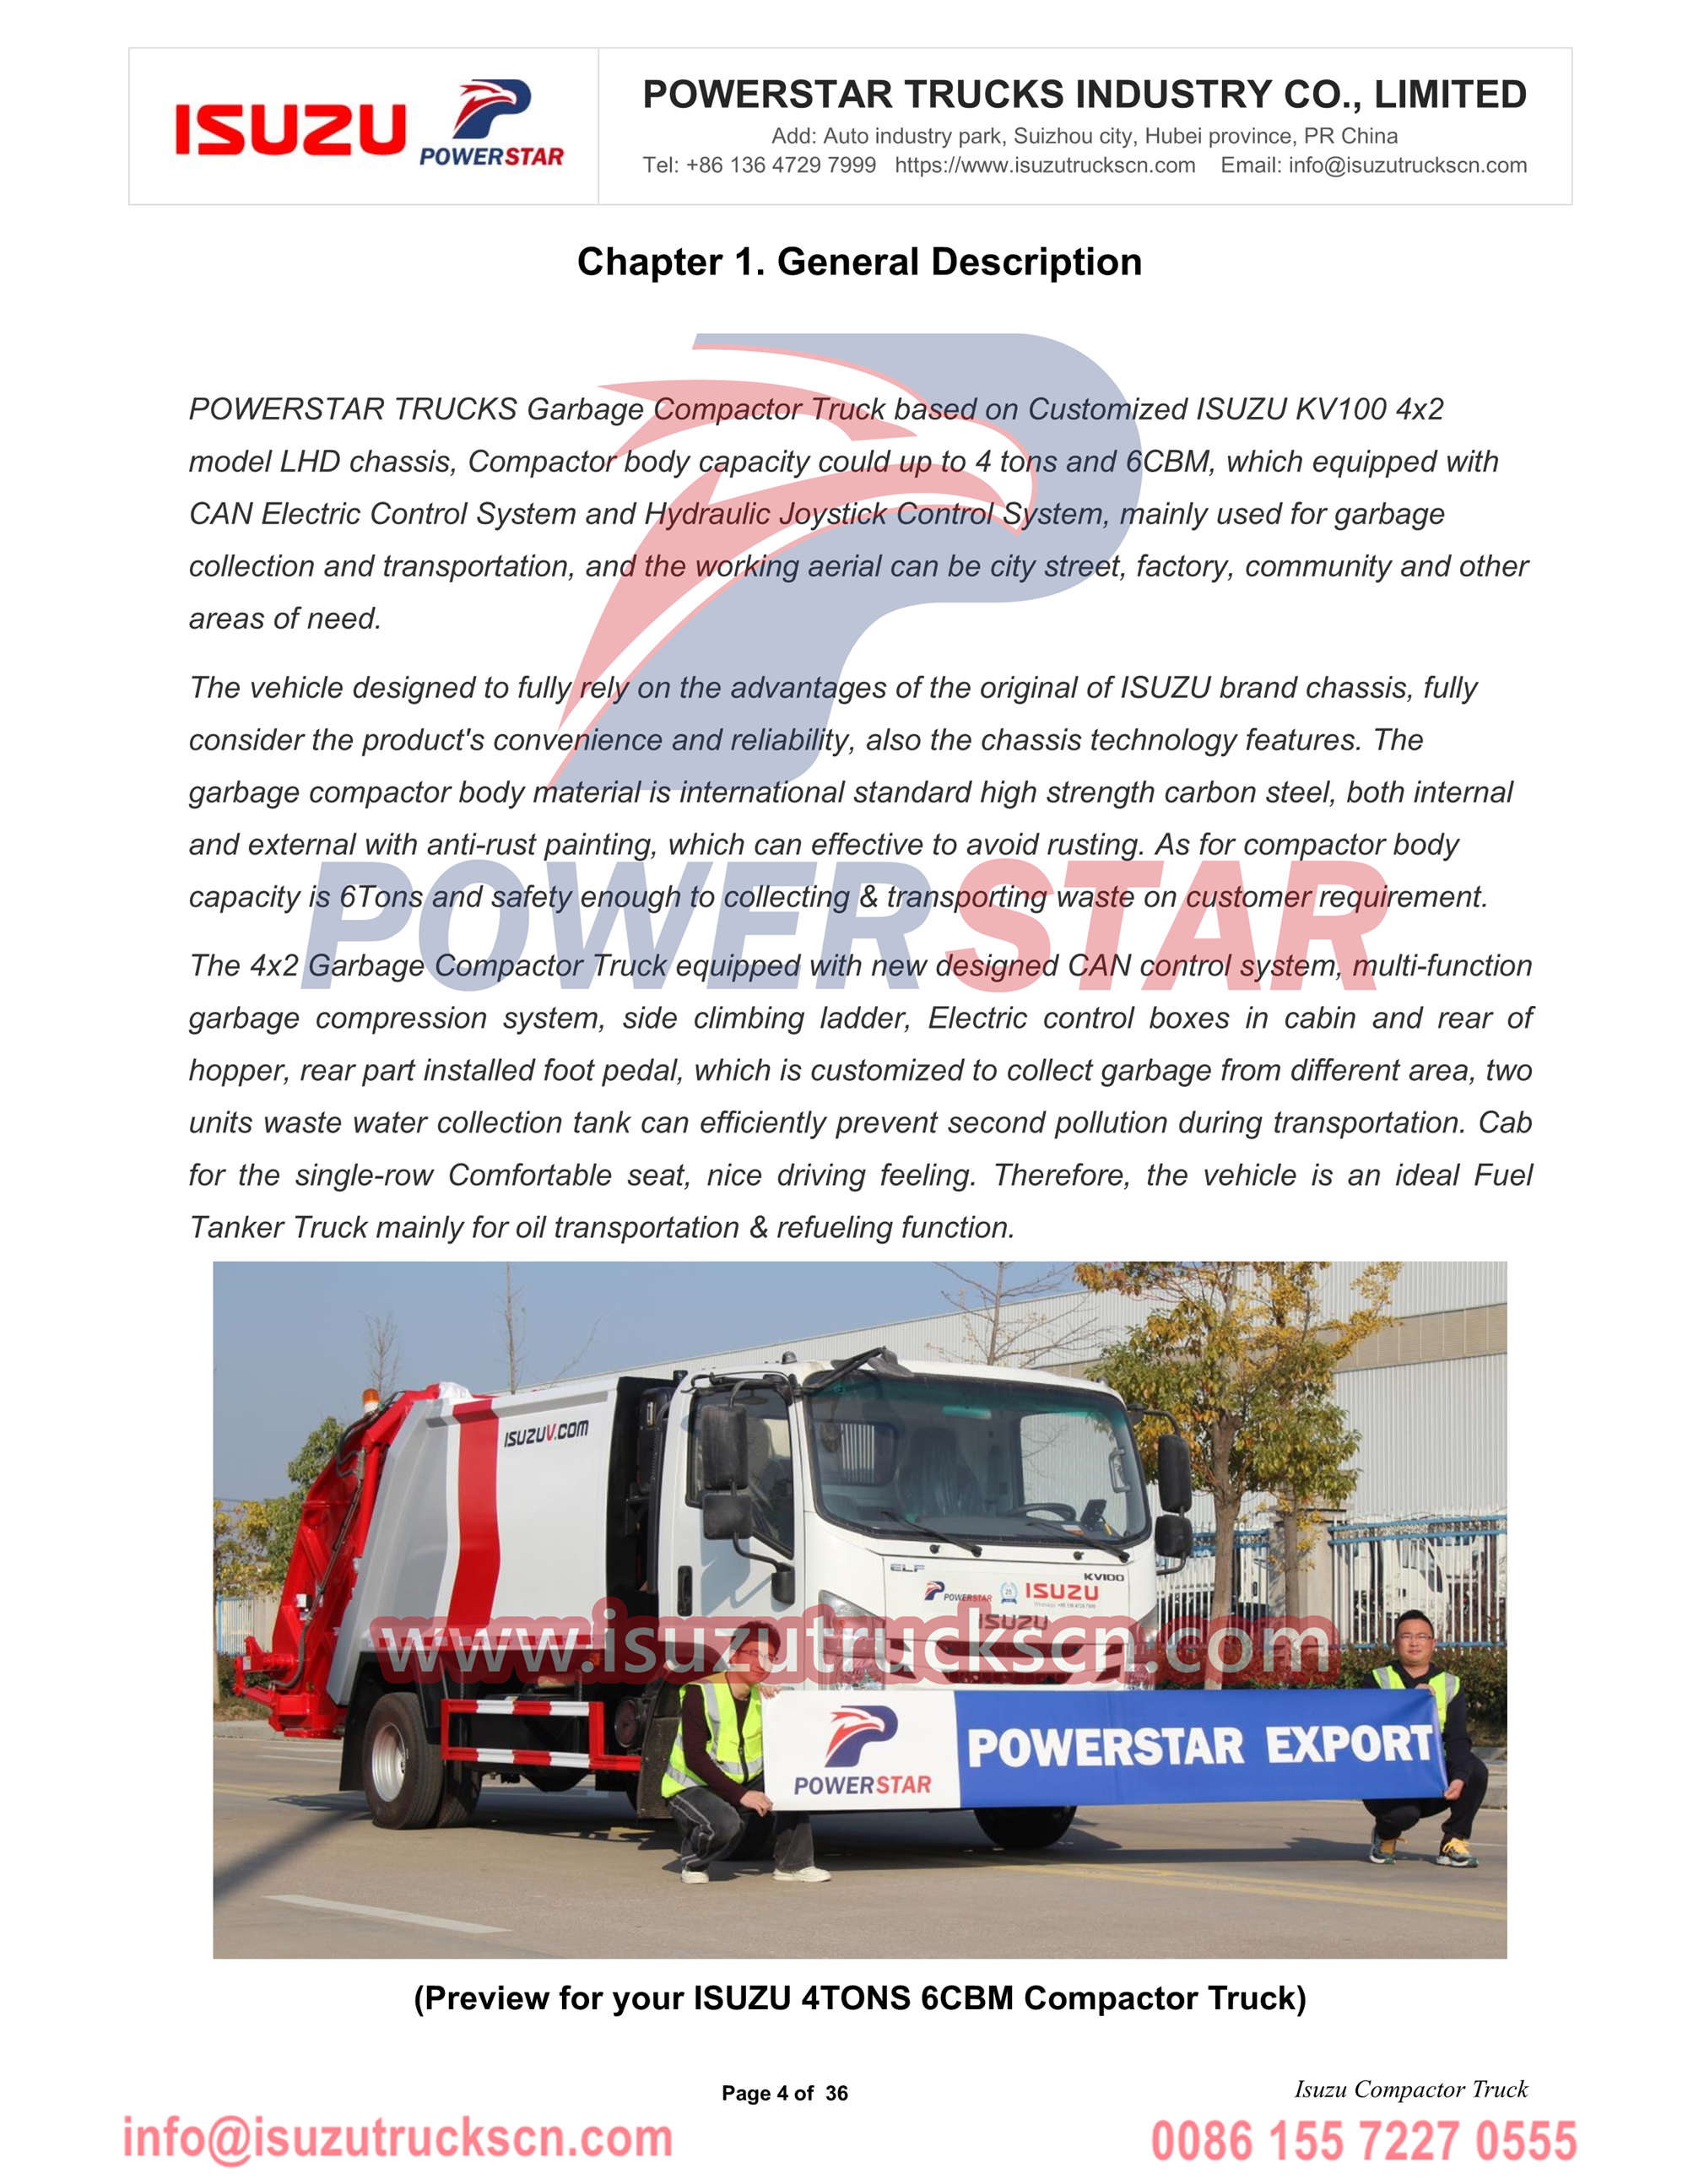 ISUZU NPR camión compactador de basura exportación manual de Moldavia